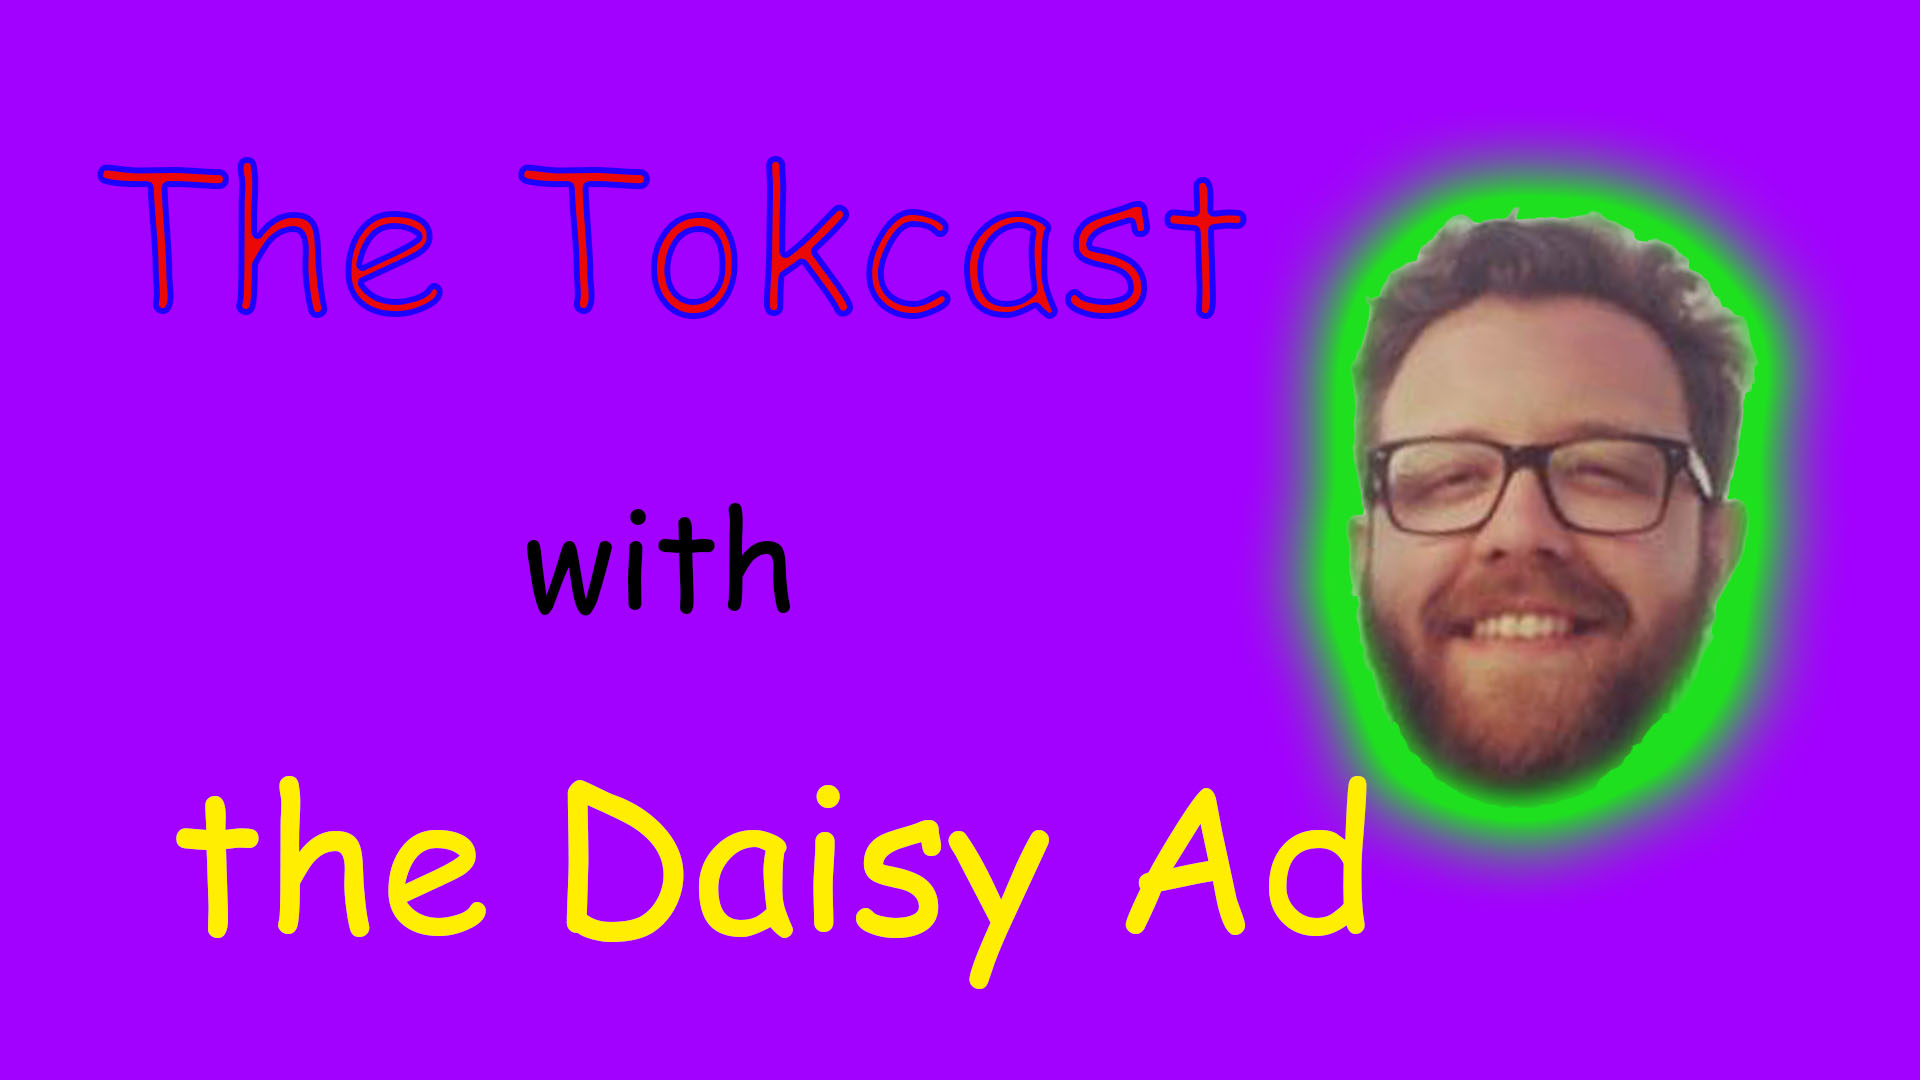 25 - The Daisy Ad